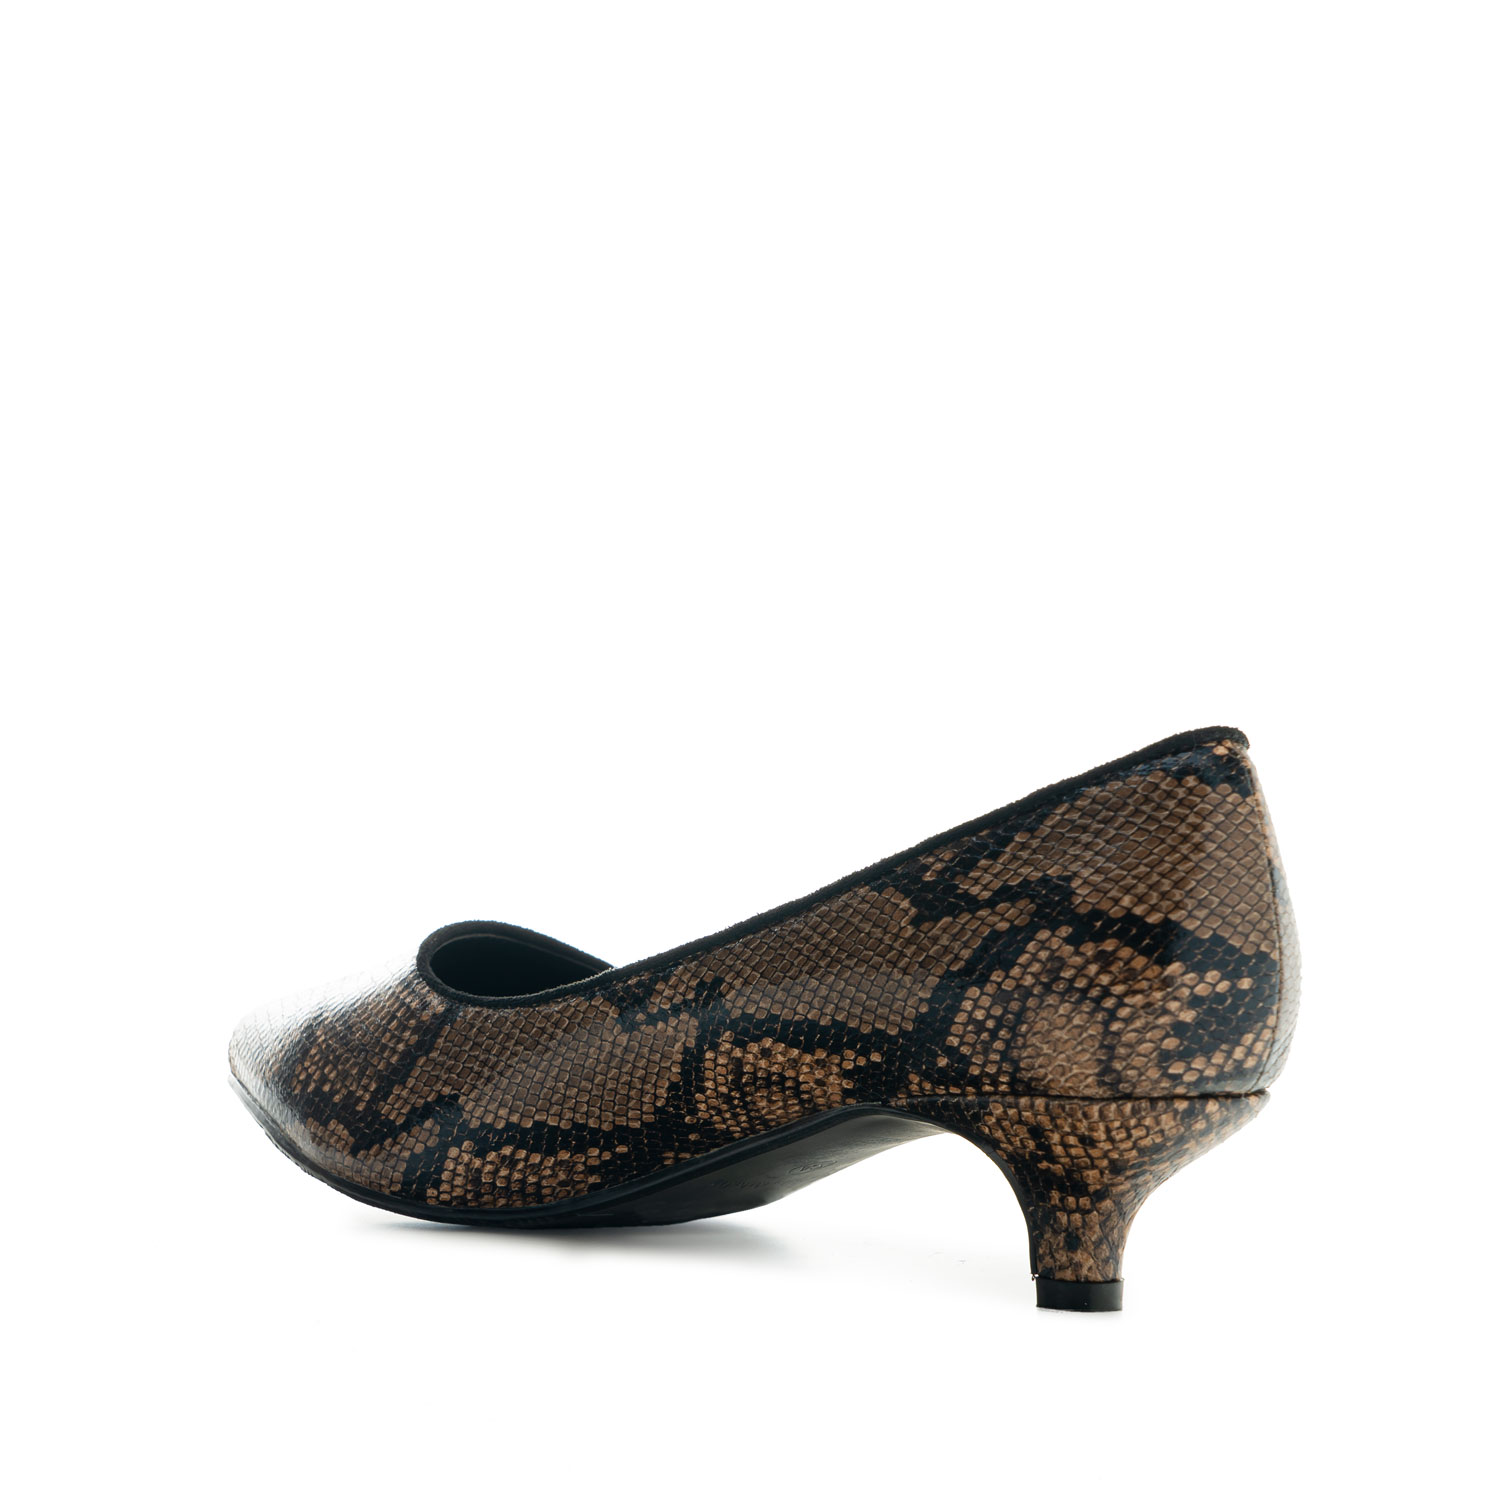 Kitten Heel Shoes in Brown Snake Print 